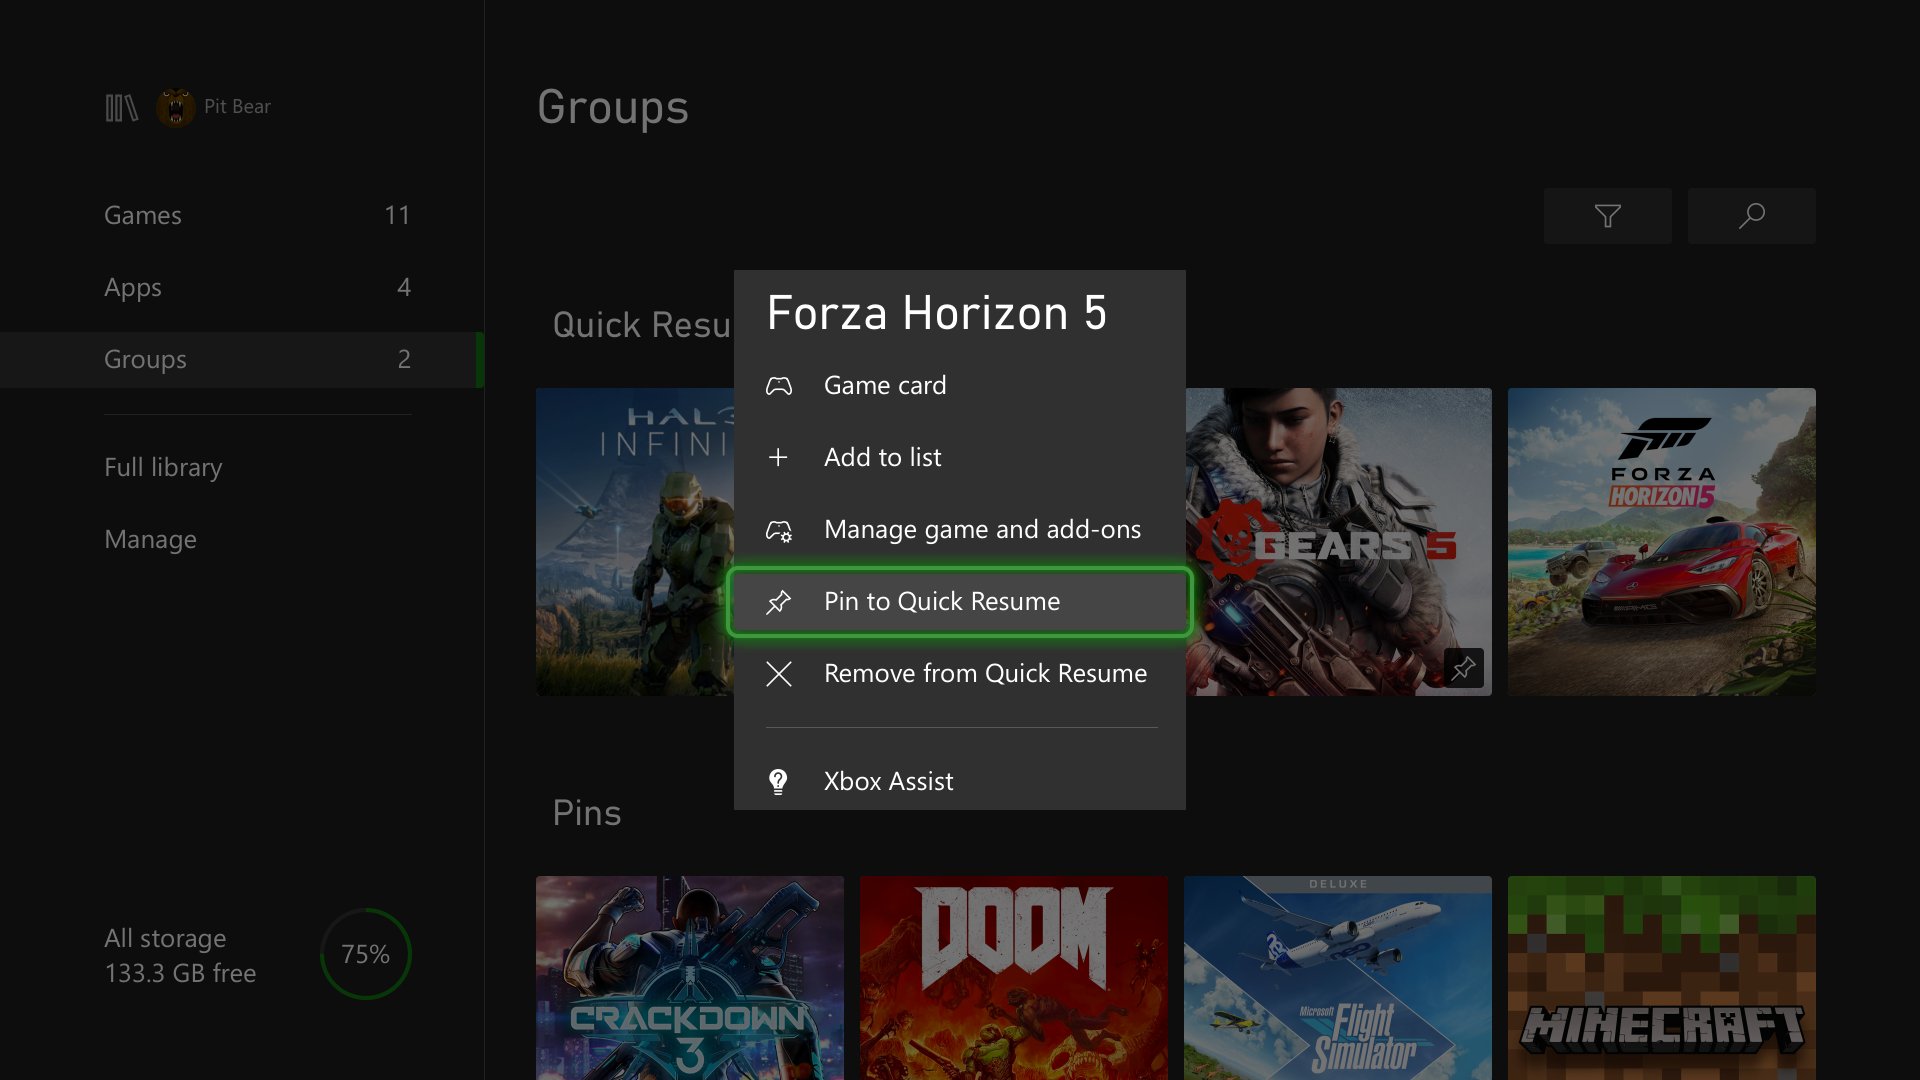 gehandicapt voorbeeld Aannemelijk March Xbox Update: Pin to Quick Resume, Controller and Audio updates, and  More - Xbox Wire